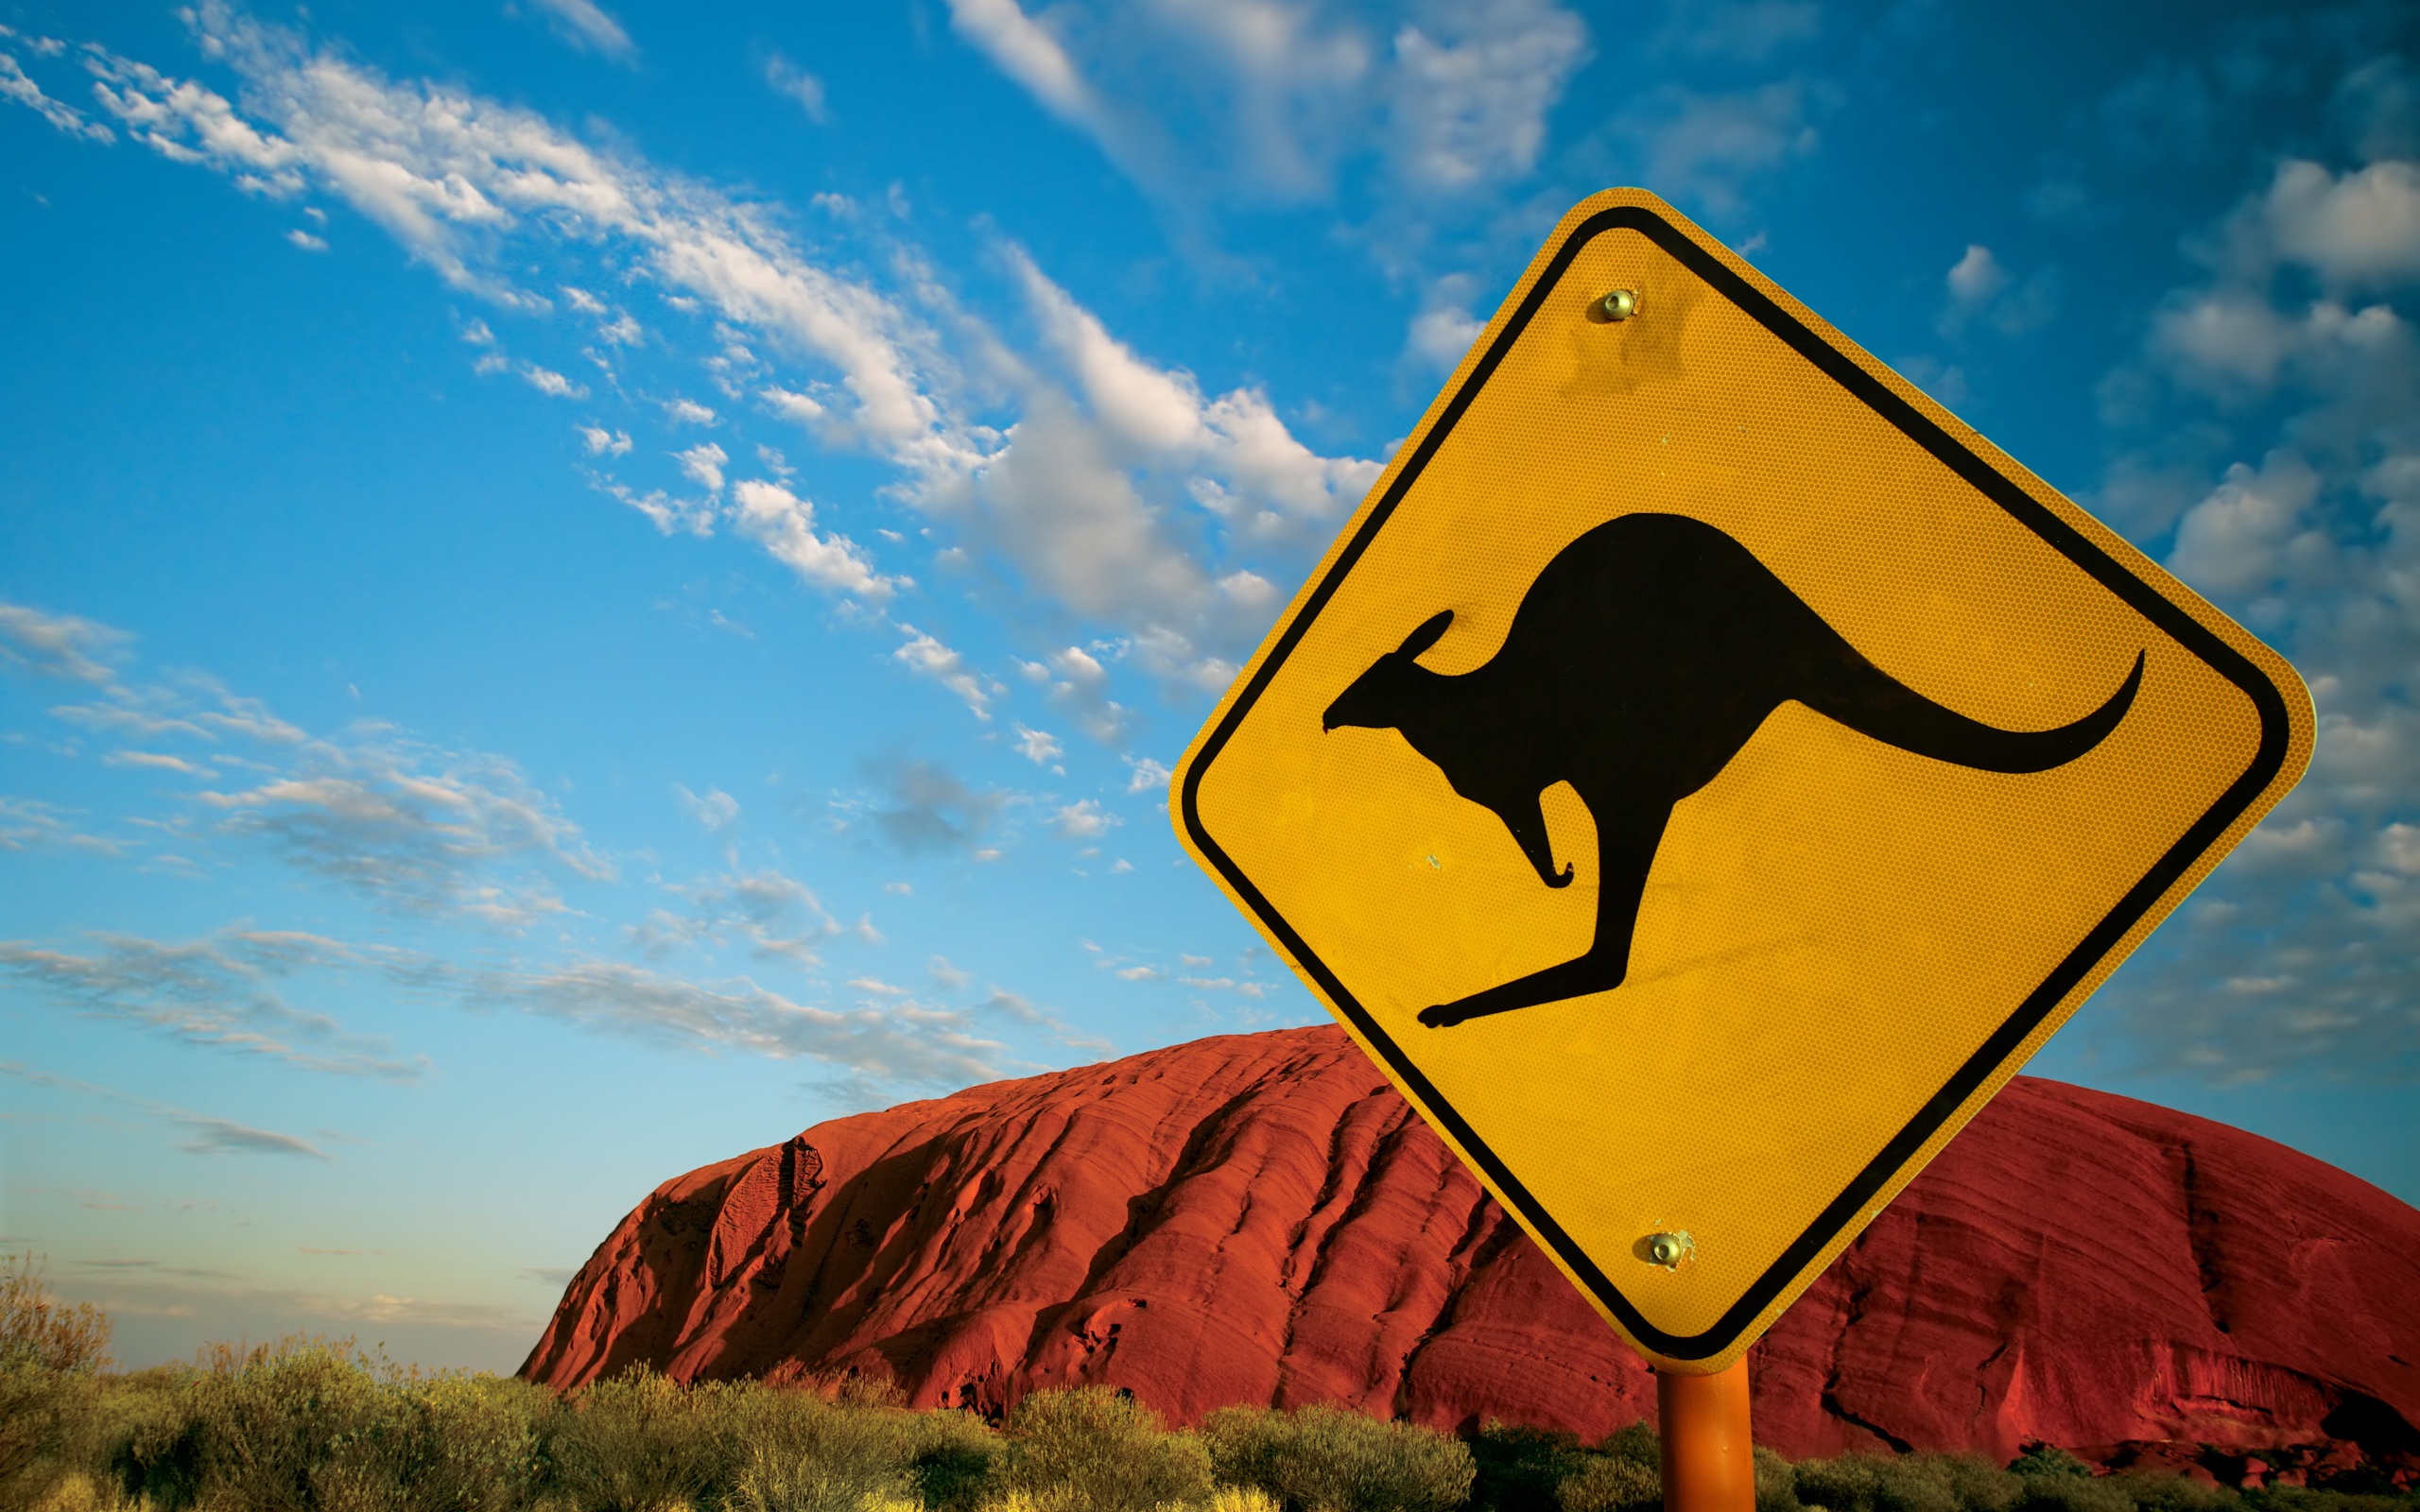 Ayers Rock Kangaroo